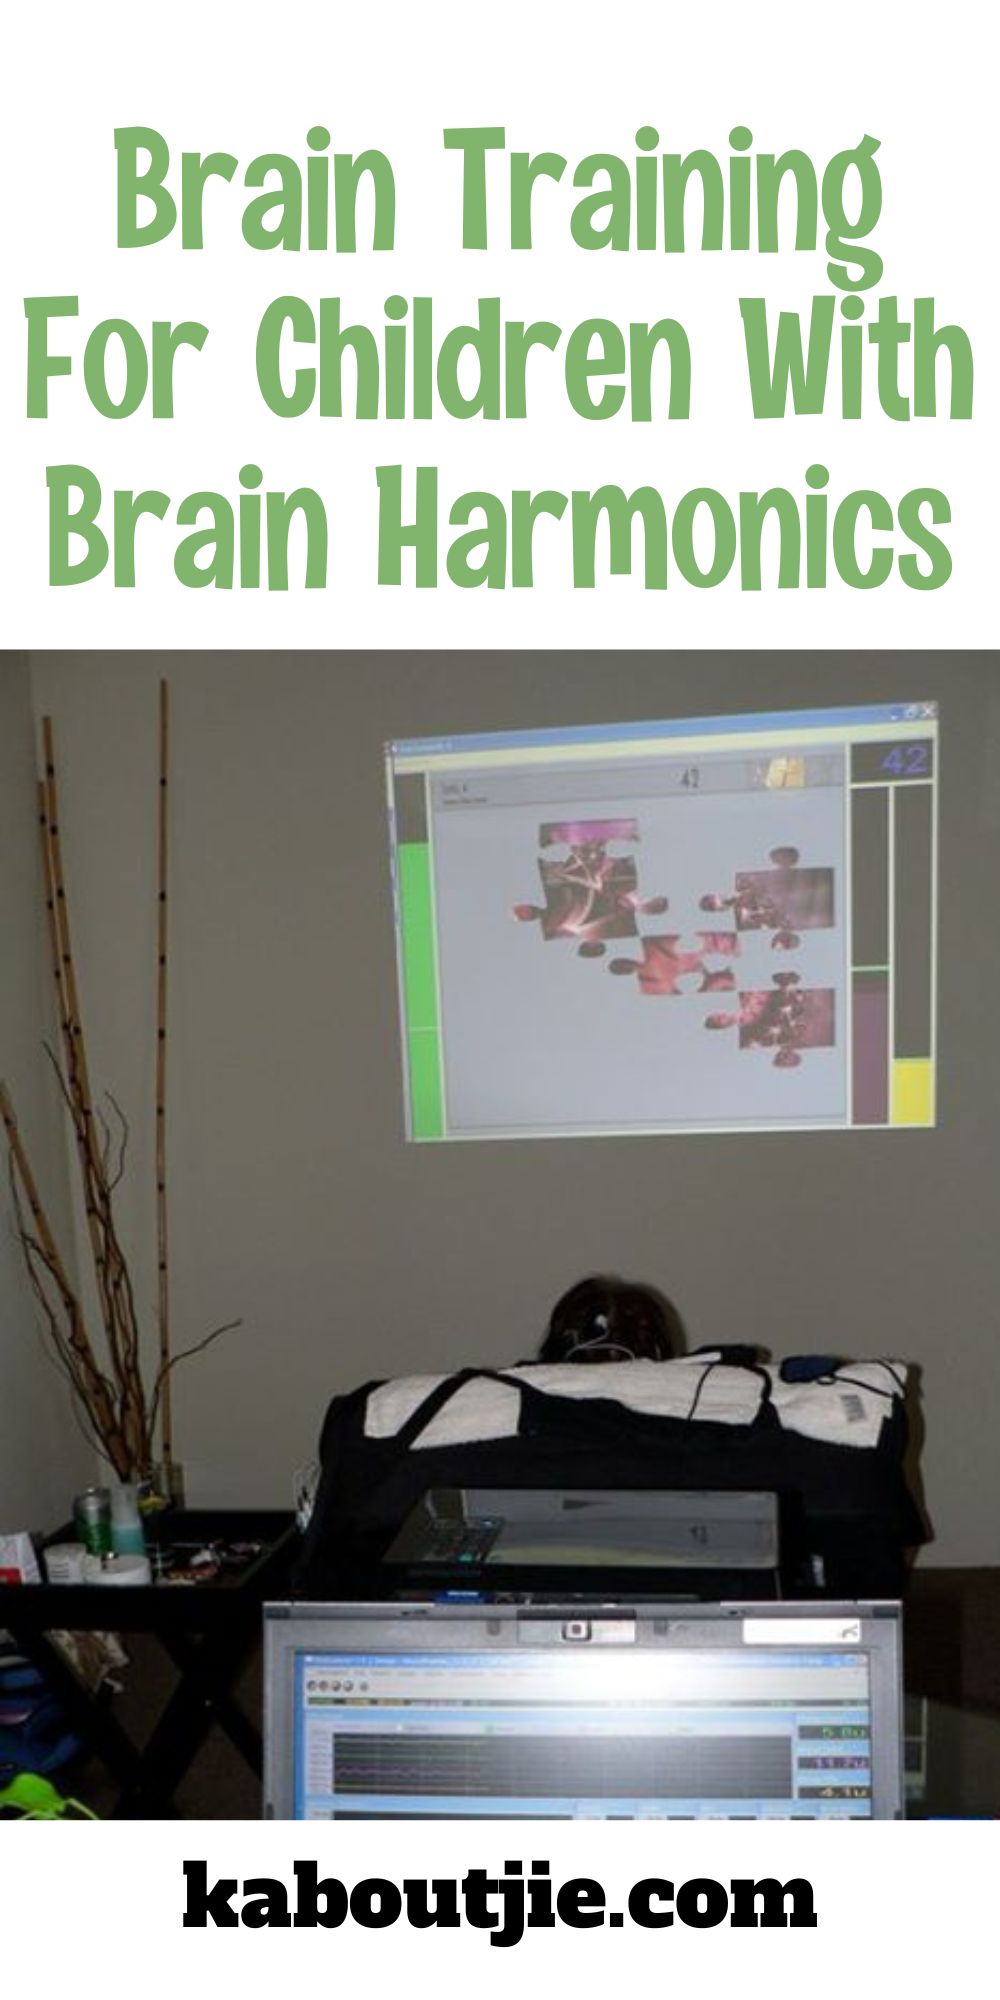 Brain Training For Children With Brain Harmonics